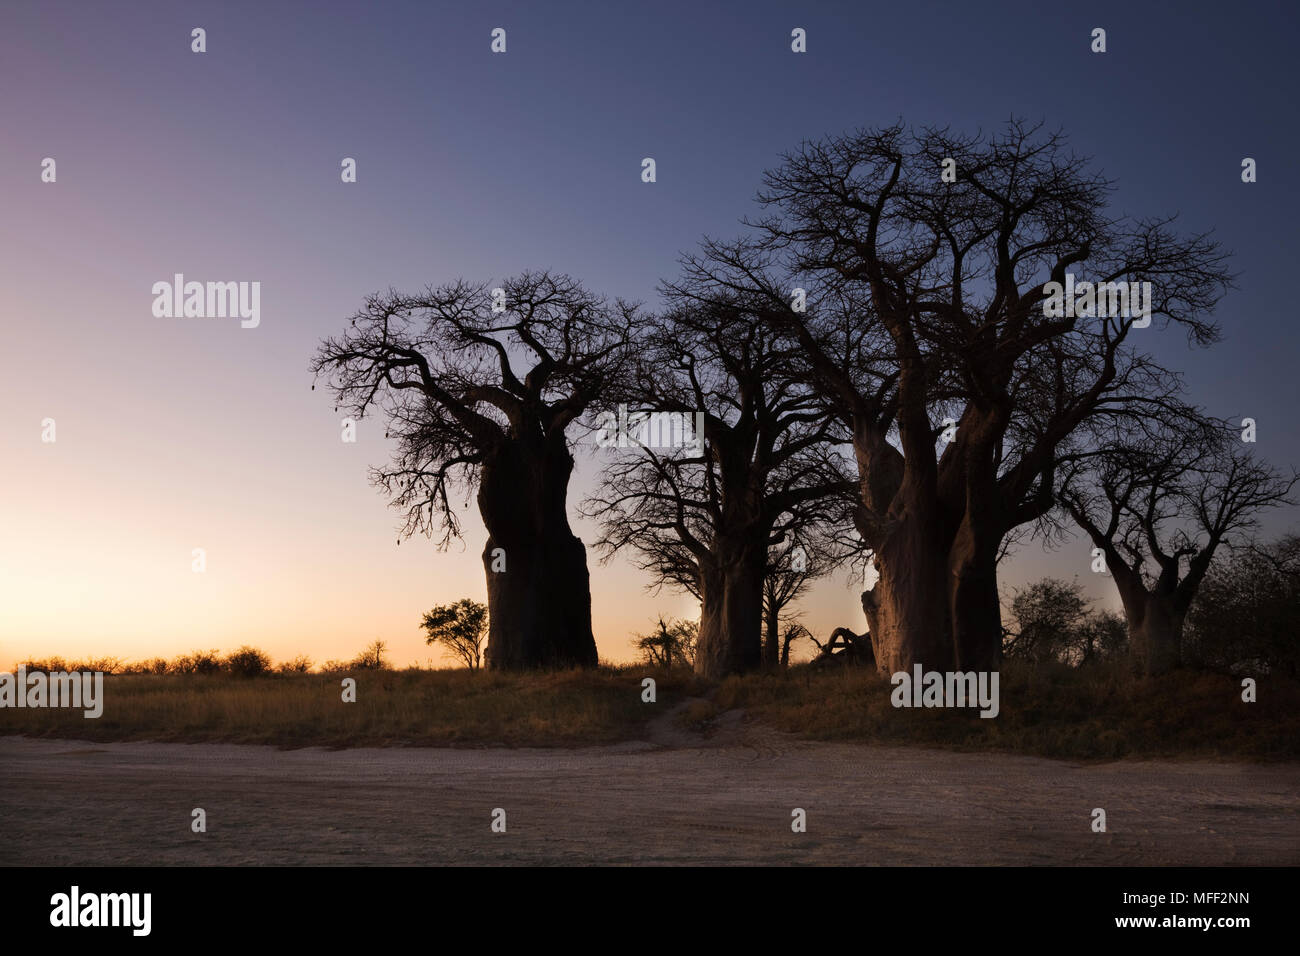 Baines' Baobabs (Adansonia digitata) al amanecer. Ubicado en el lado sur del Parque Nacional de Nxai Pan en Botswana, también conocida como las hermanas de dormir. T Foto de stock